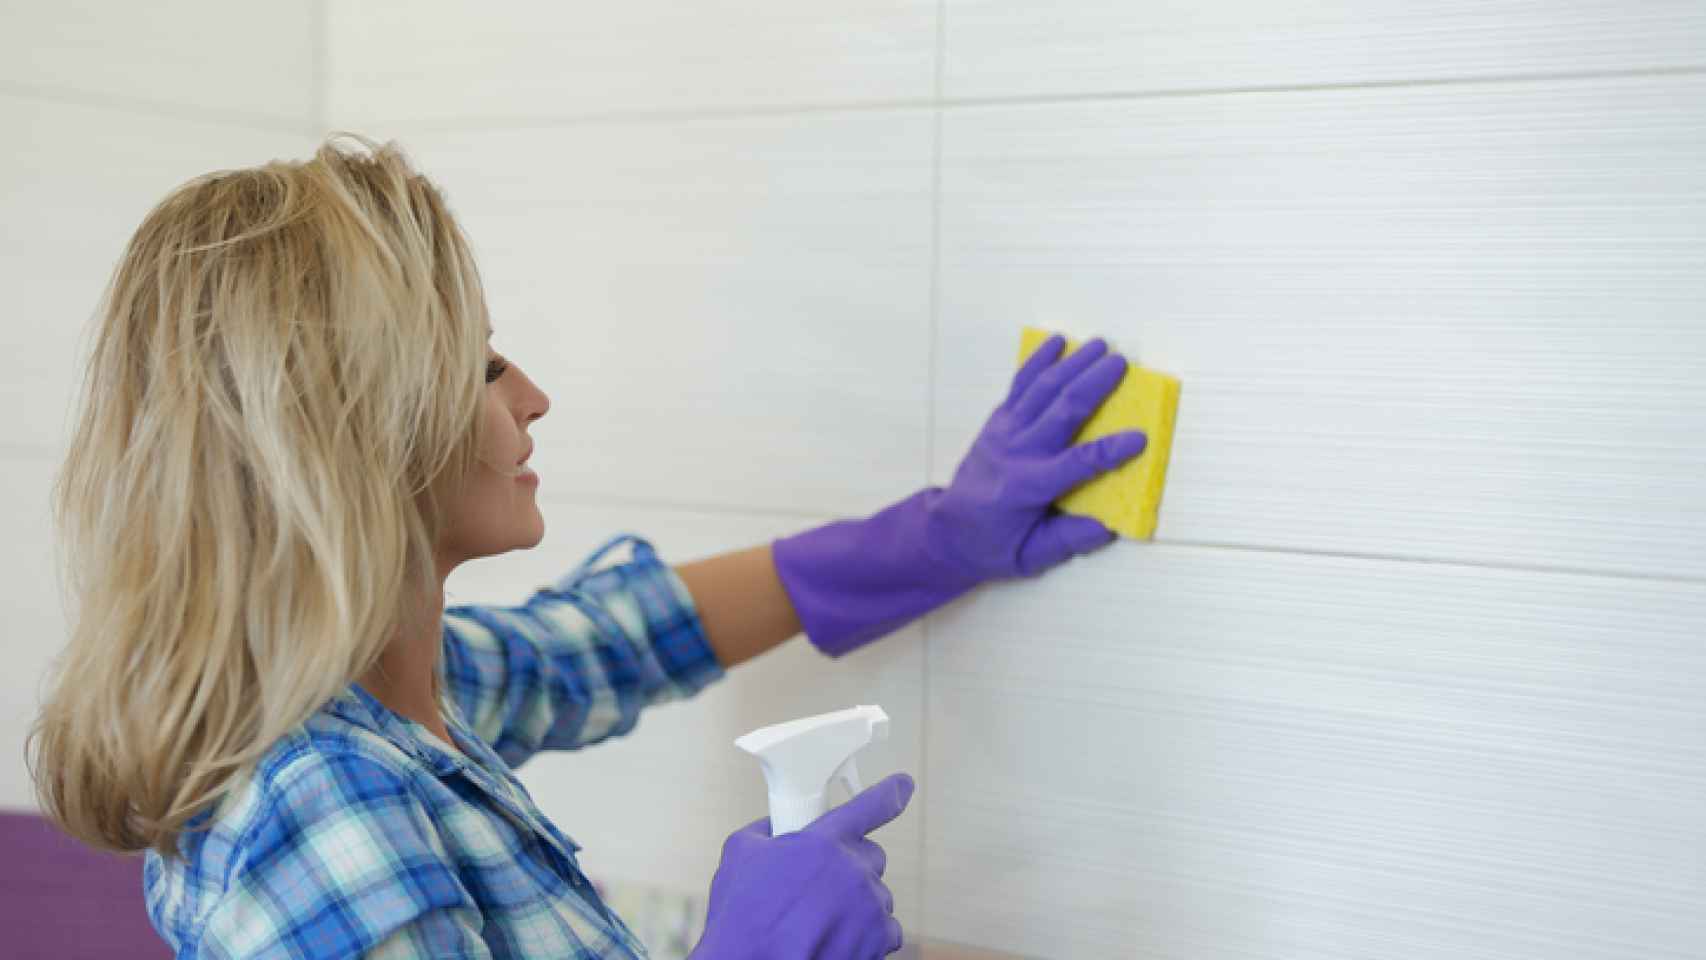 Cómo limpiar los azulejos de la cocina sin esfuerzo